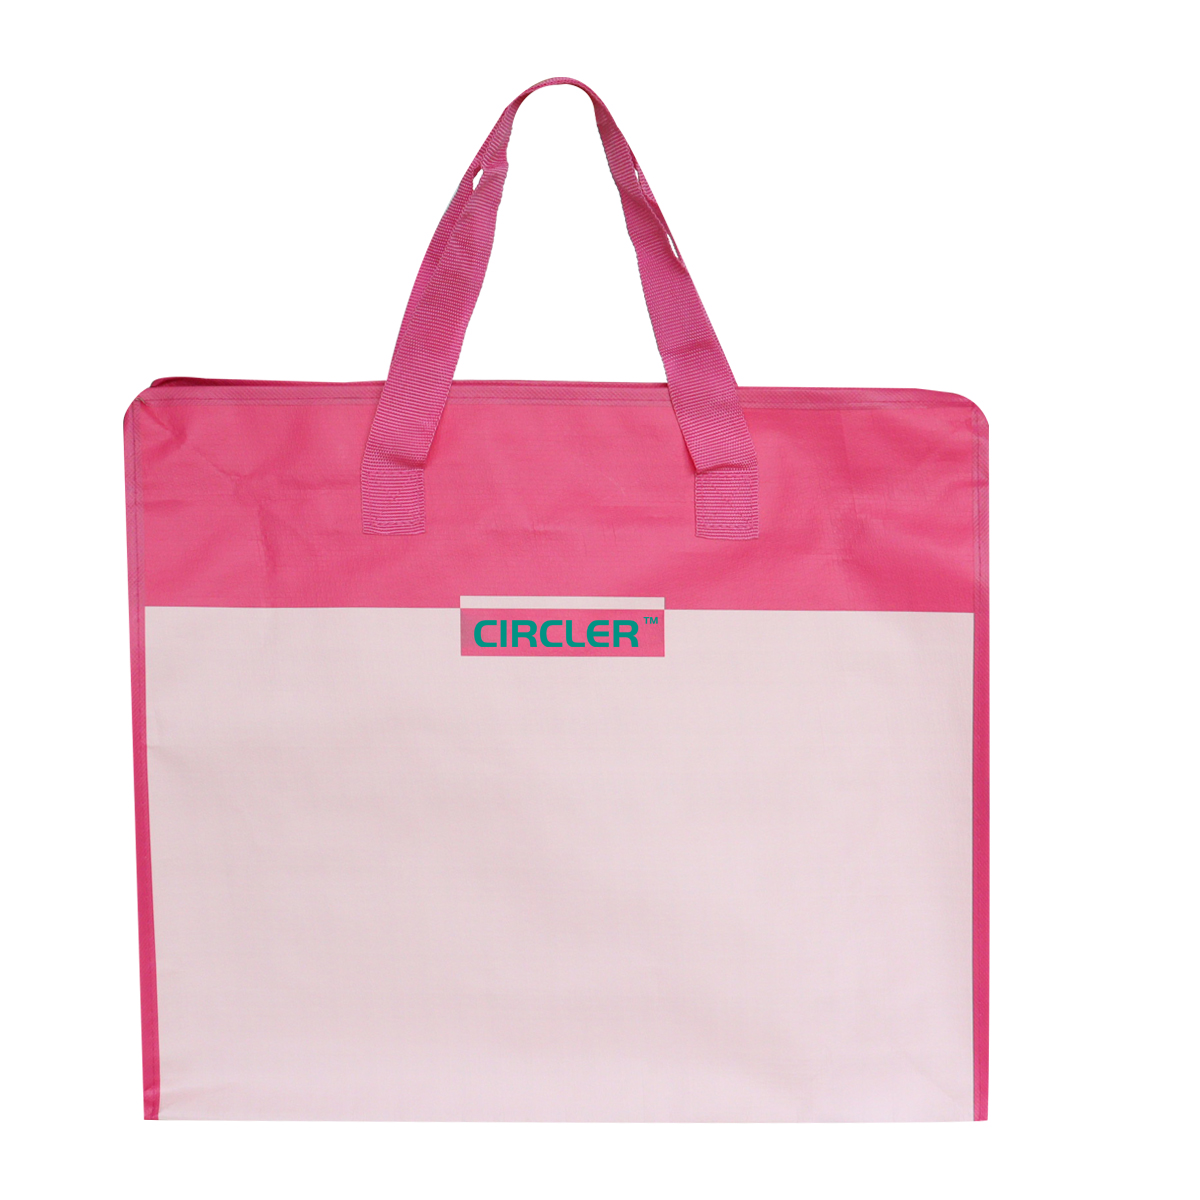 Reusable travel bag with handle  SK0016110B10BDWN